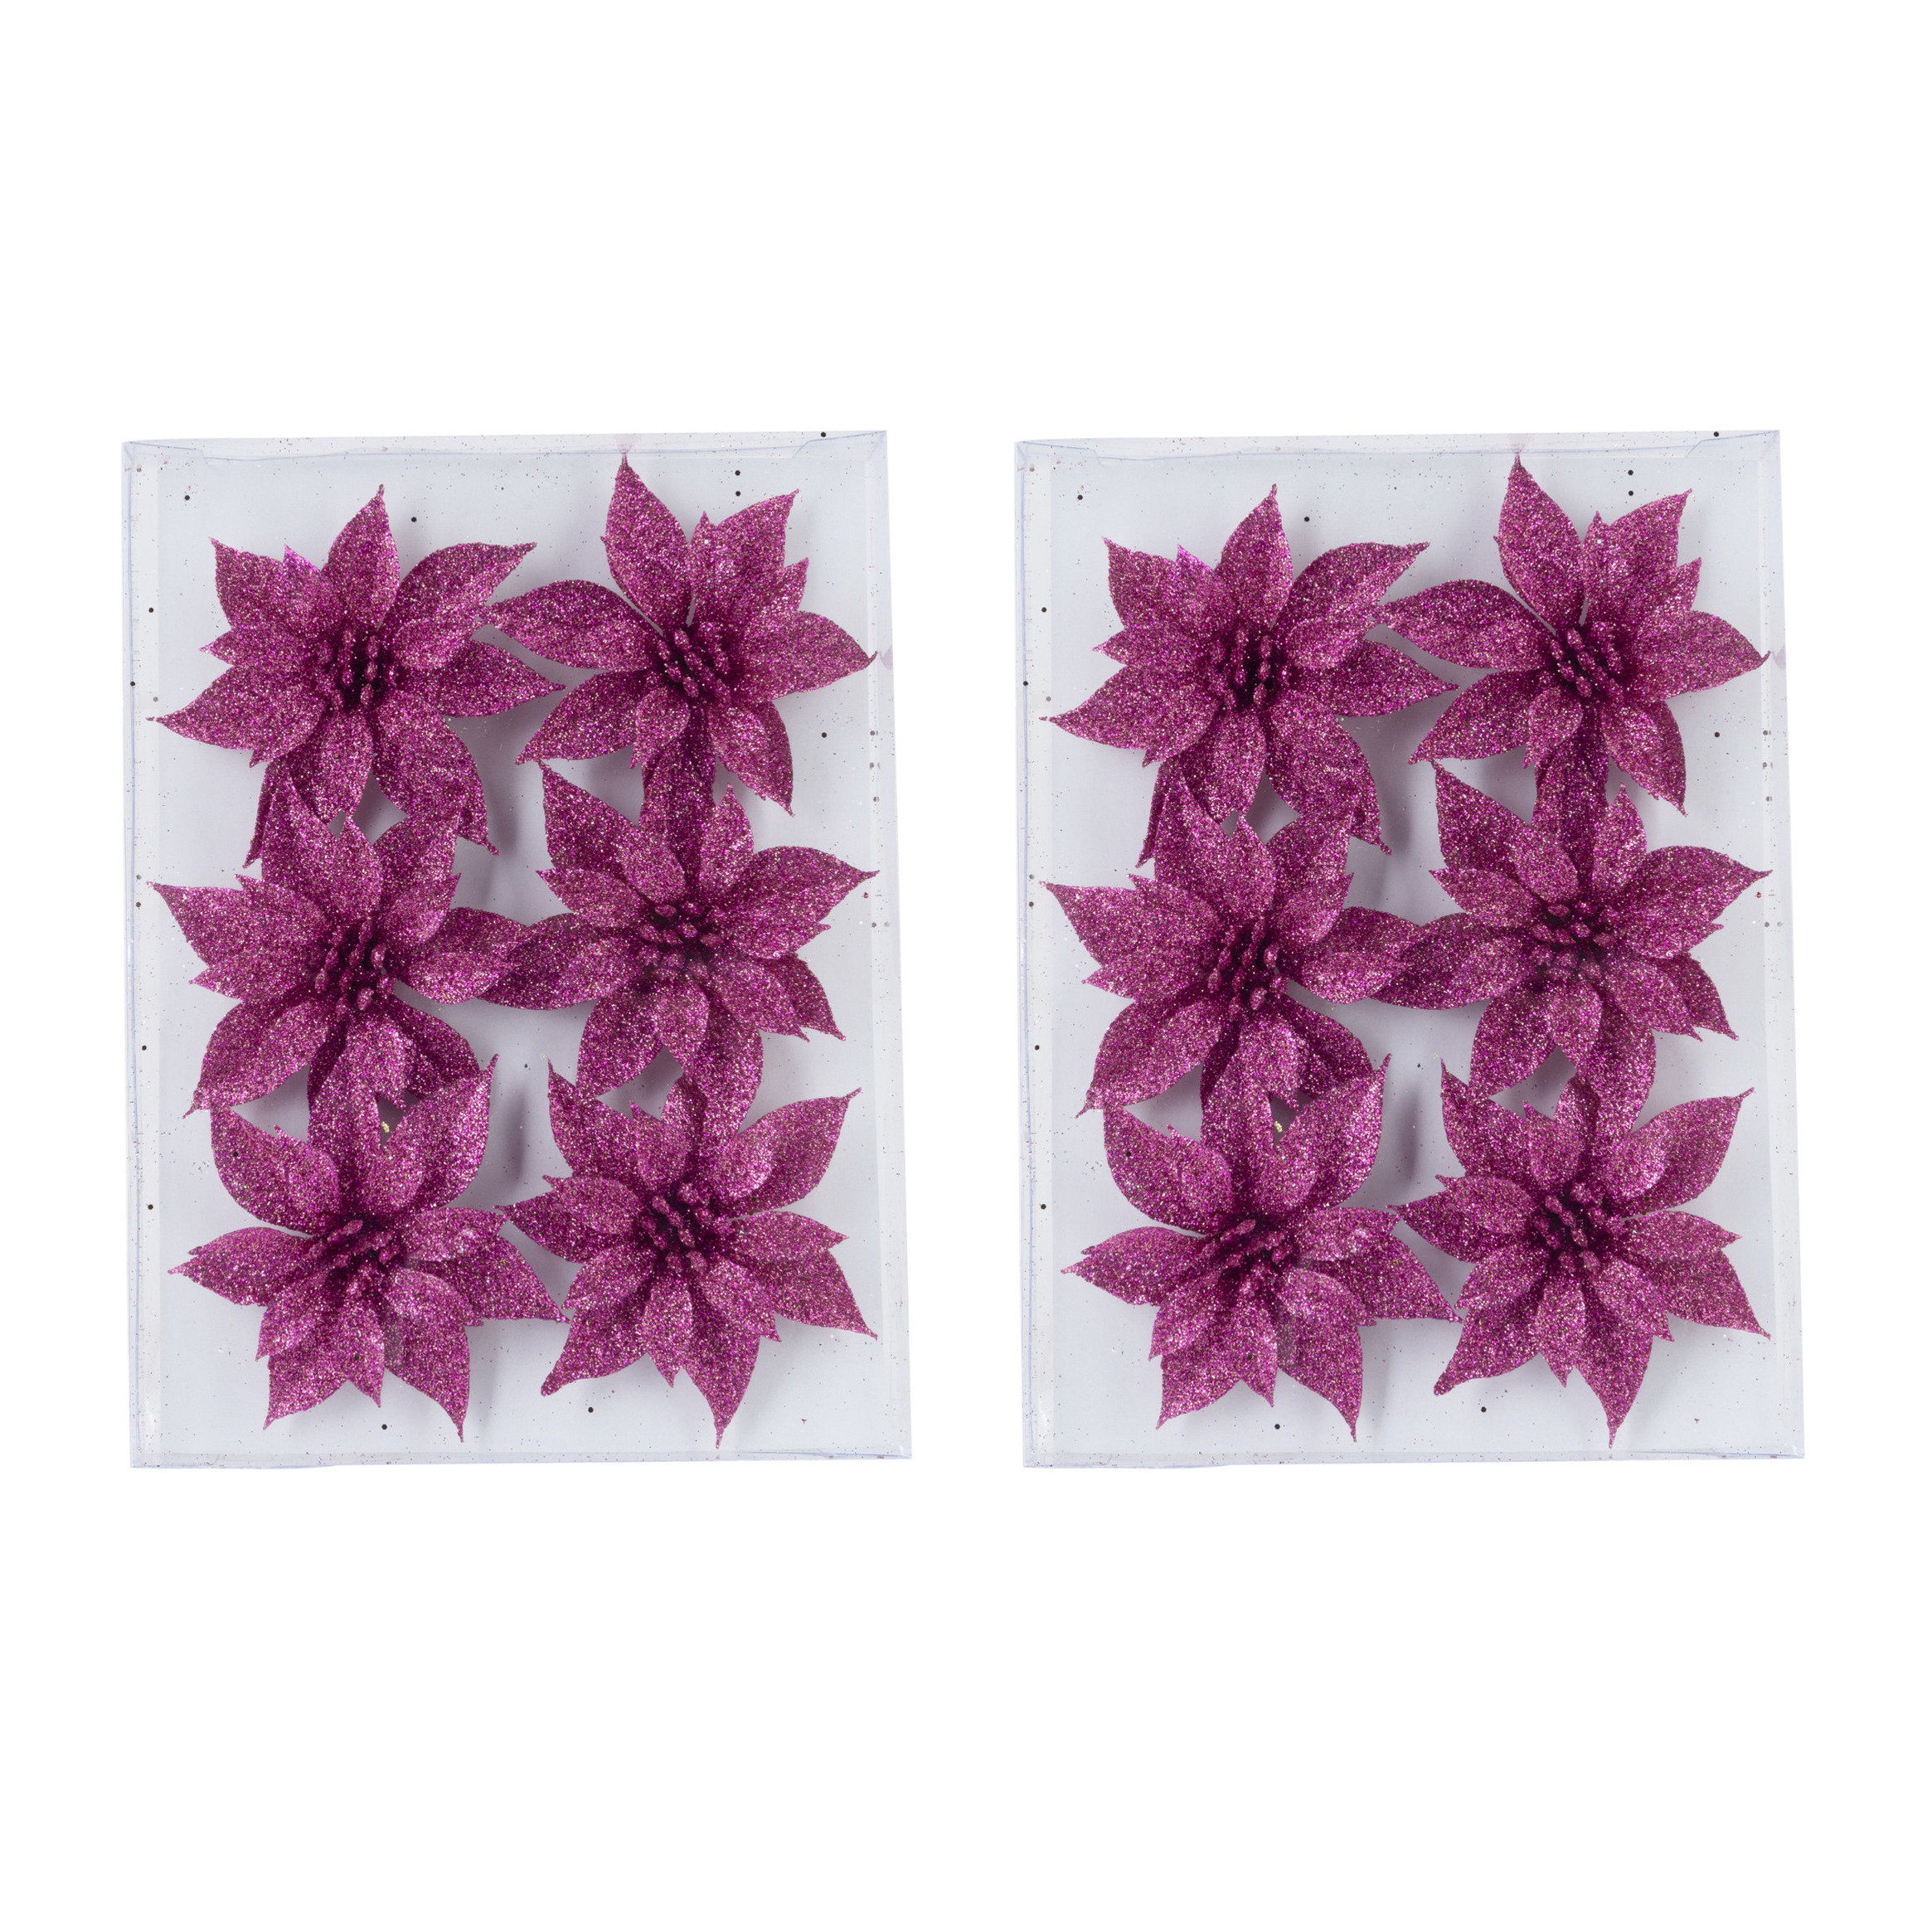 24x stuks decoratie bloemen rozen fuchsia roze glitter op ijzerdraad 8 cm